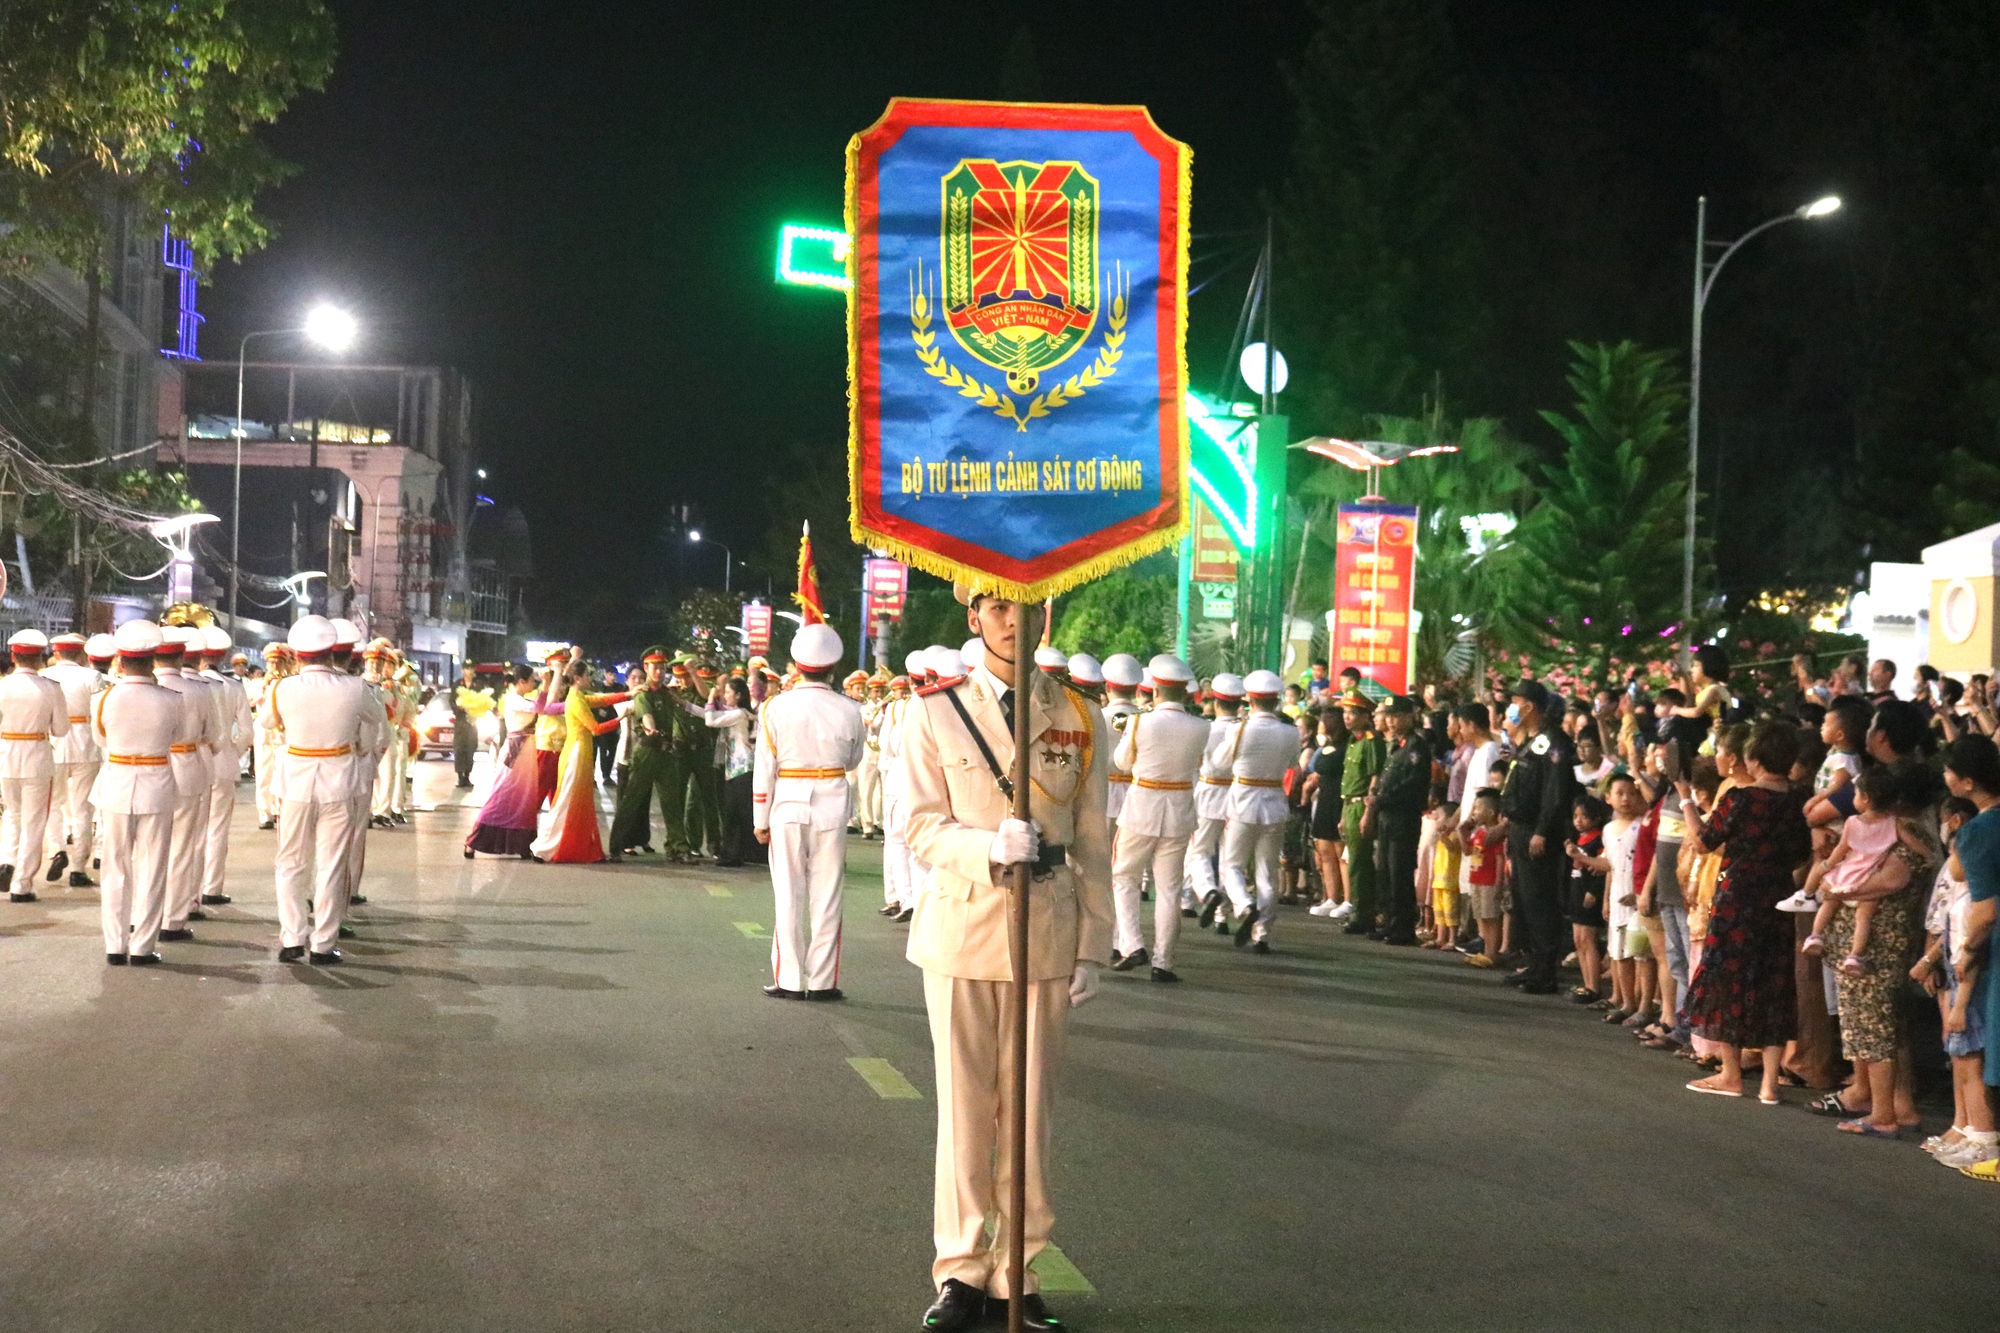 CLIP: Đoàn nghi lễ Công an nhân dân biểu diễn tại bến Ninh Kiều - Ảnh 1.